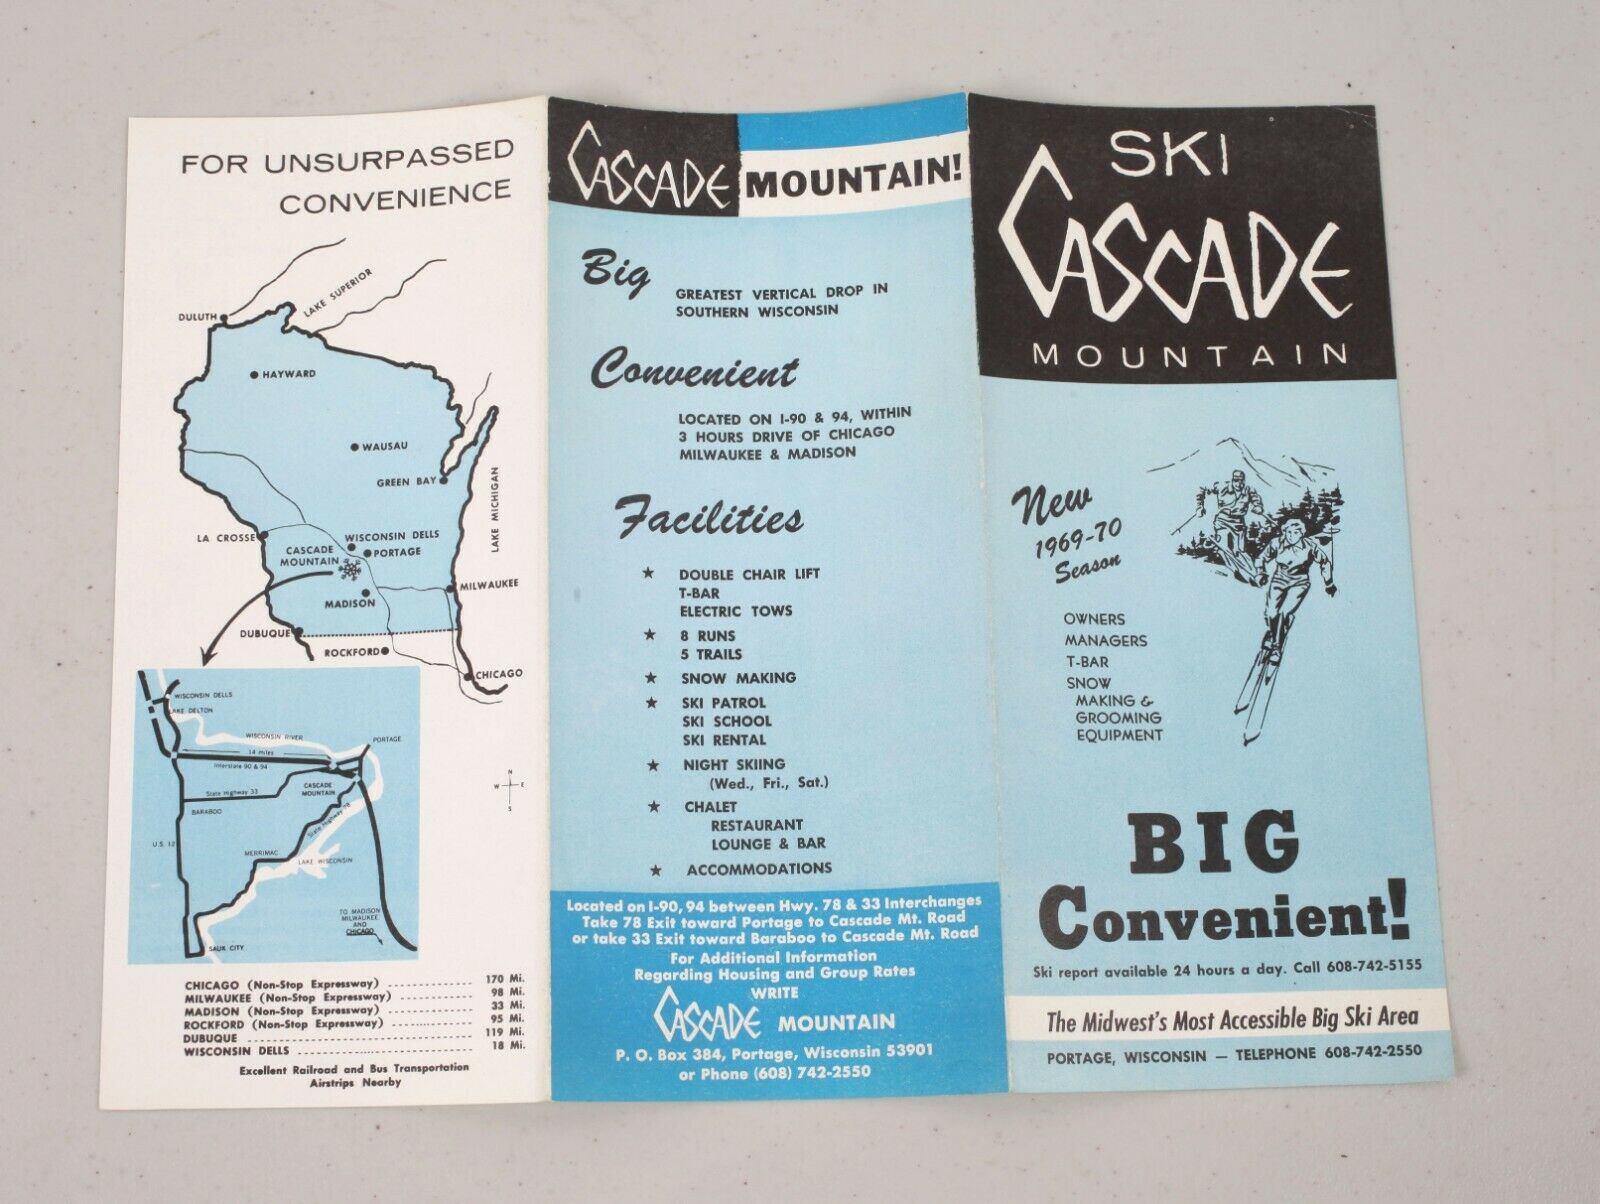 Vintage 1969-70 Ski Cascade Mountain Tourism Brochure Travel Portage Wisconsin